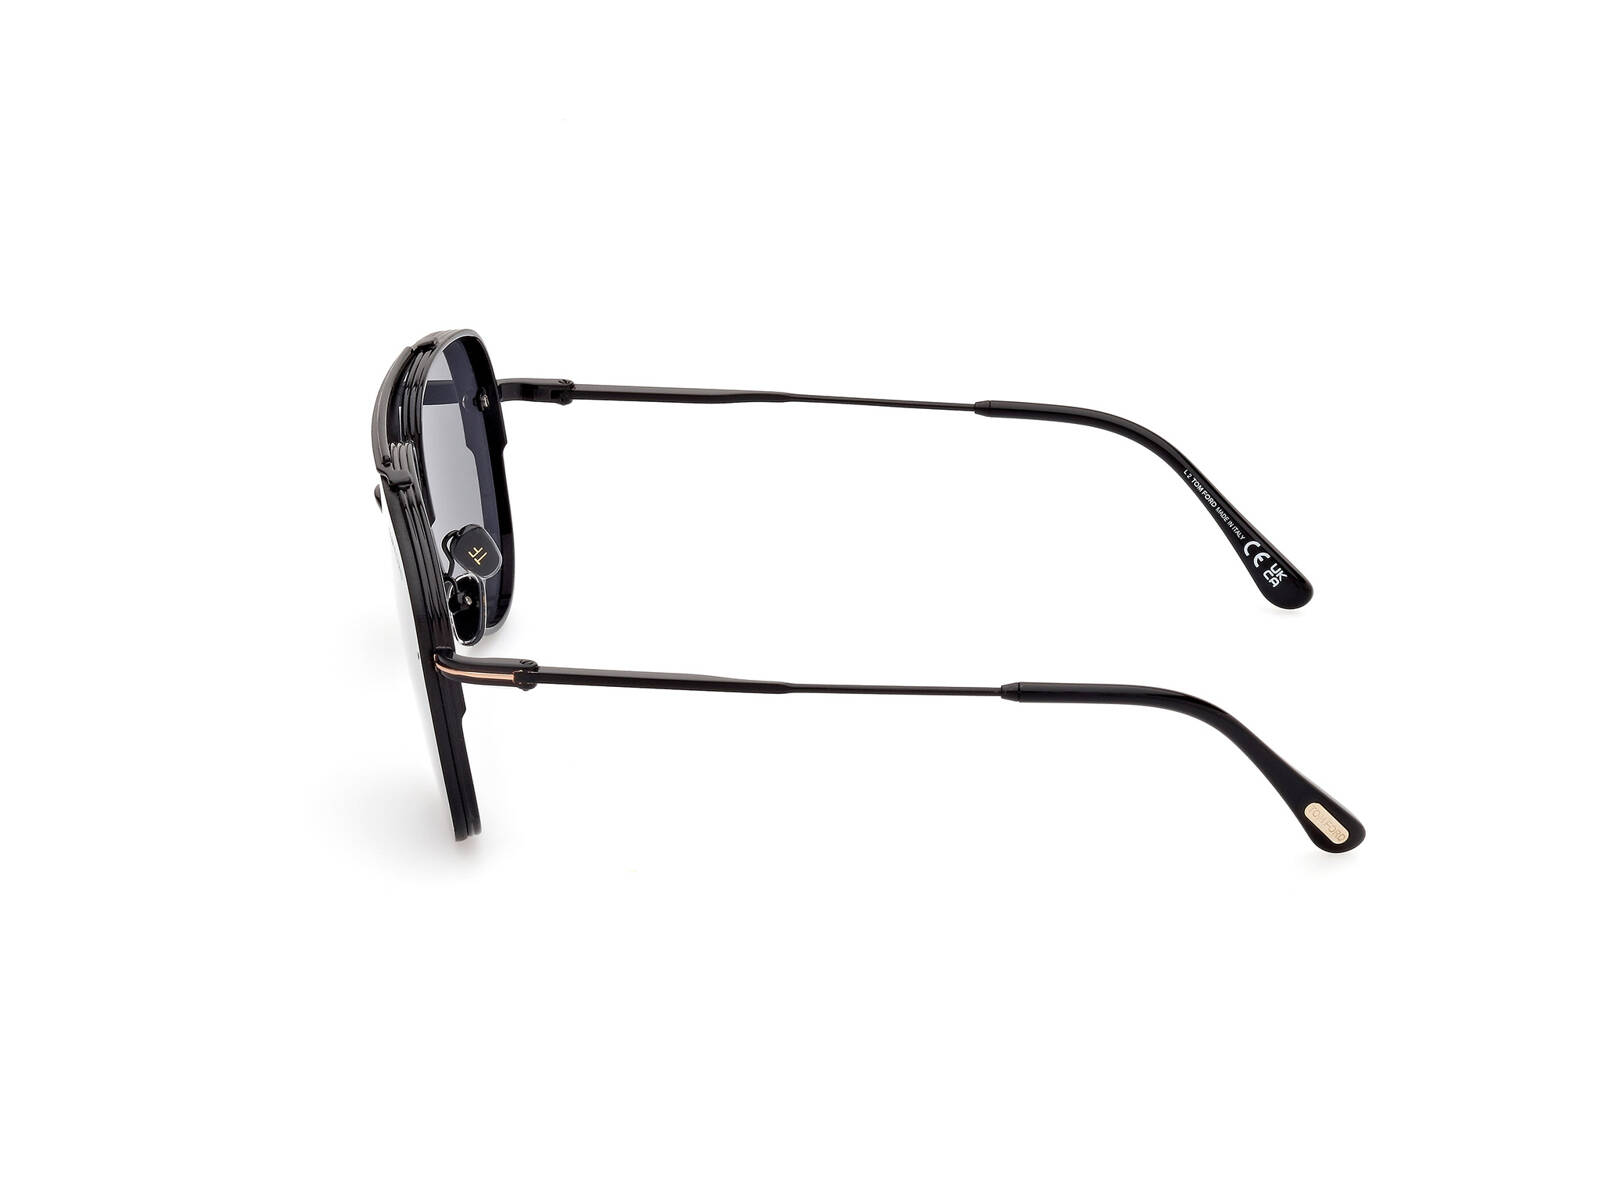 Tom Ford Okulary przeciwsłoneczne FT1071-01A